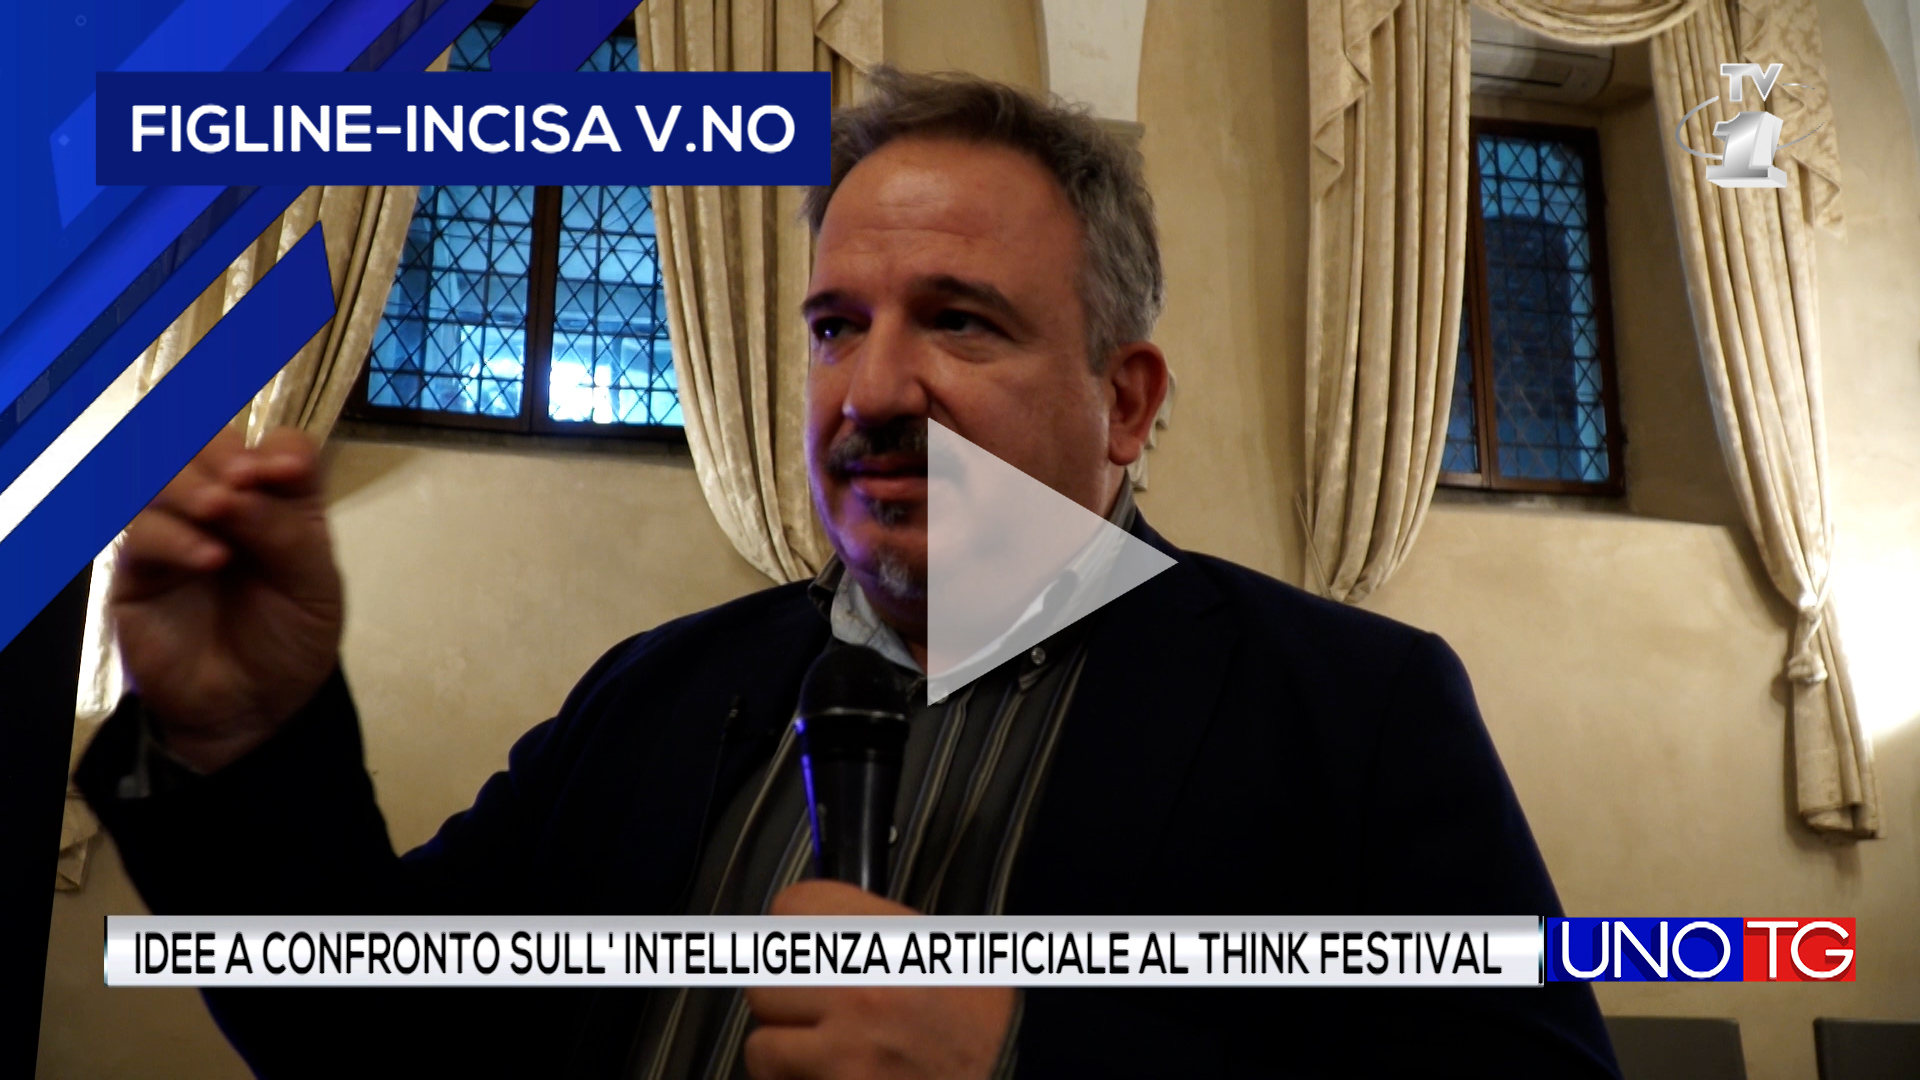 Idee a confronto sull'intelligenza artificiale al "Think Festival"